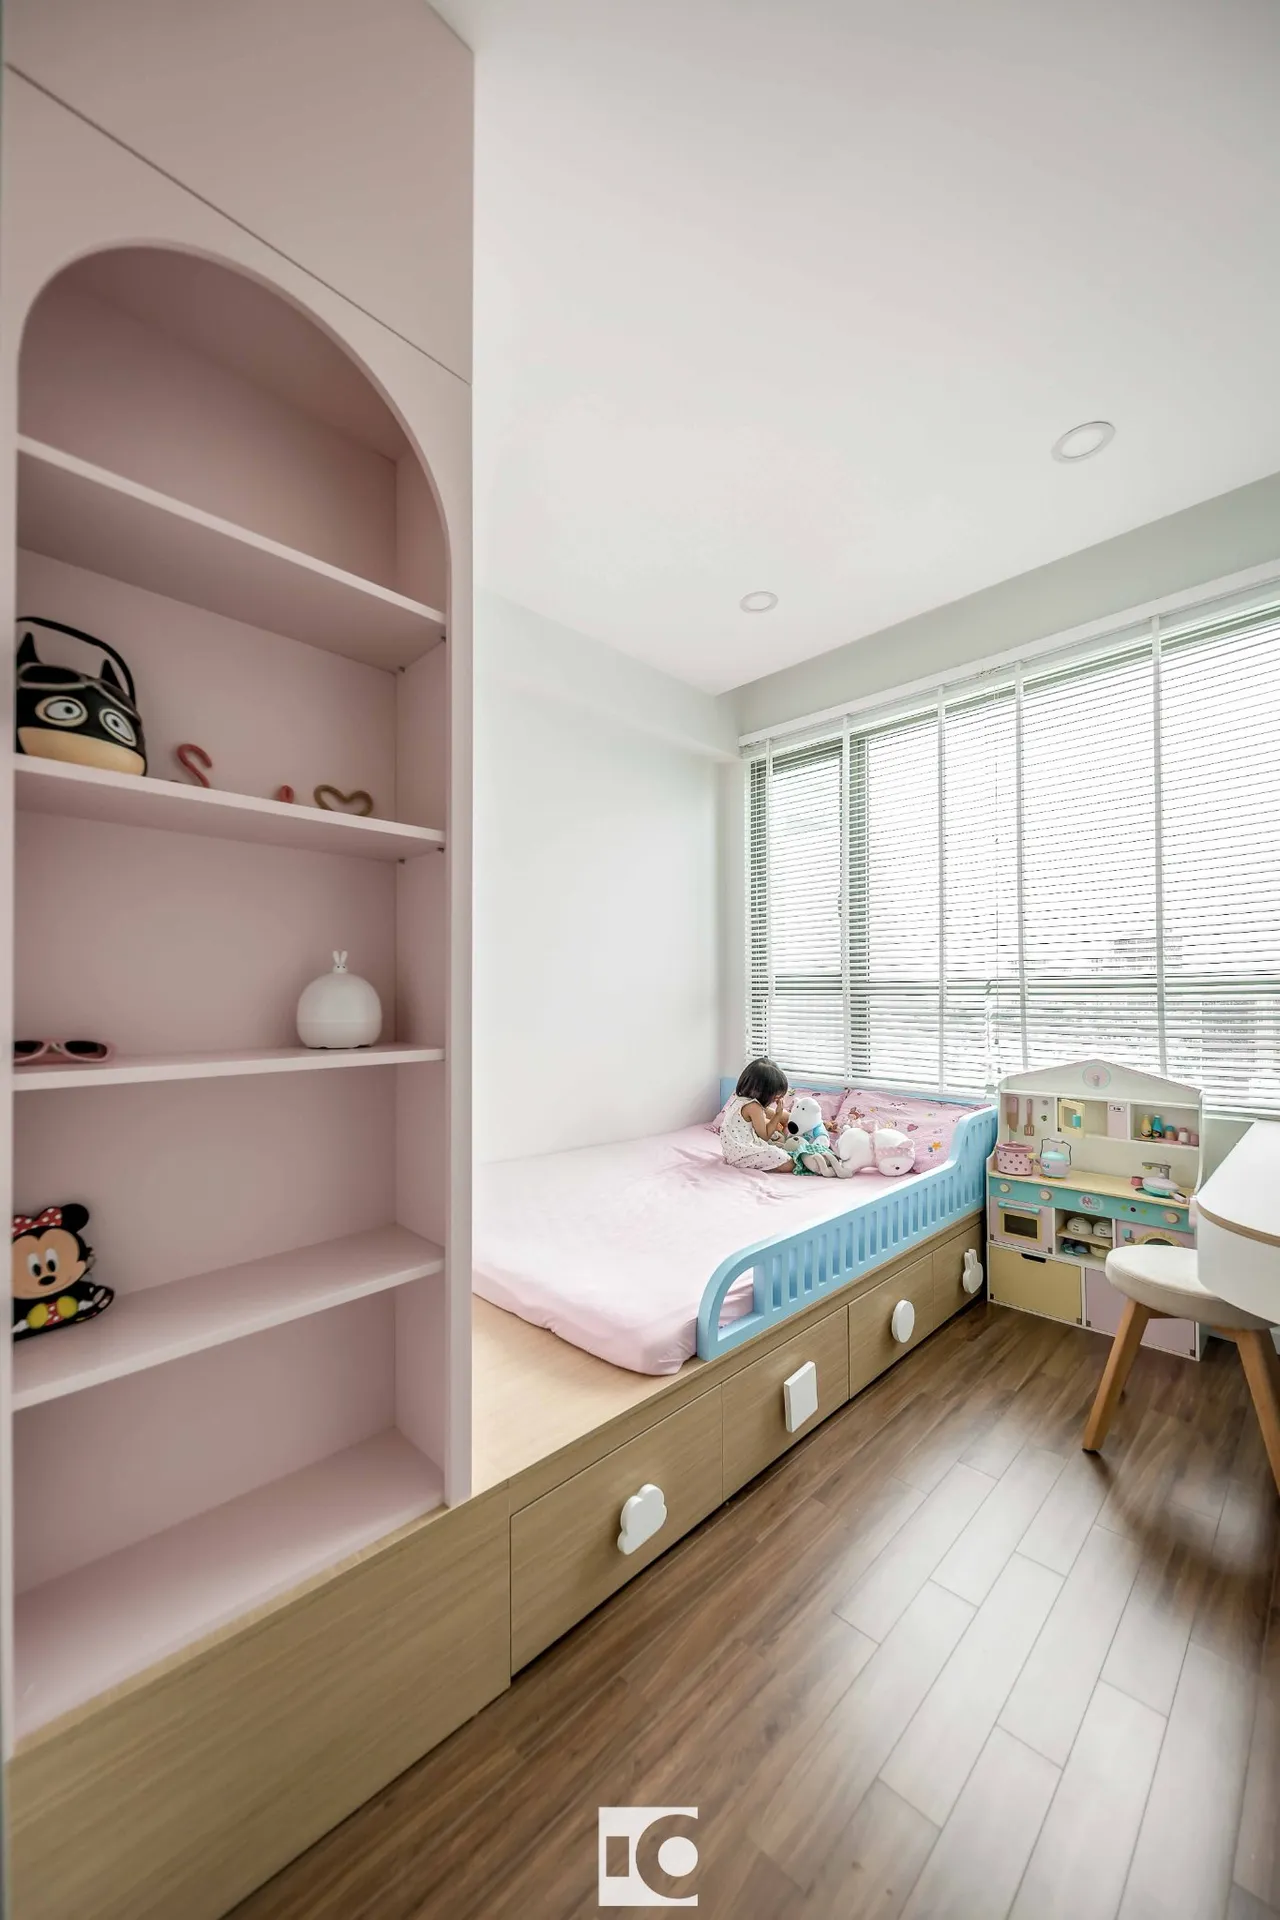 Hoàn thiện nội thất phòng ngủ cho bé Căn hộ The Riviera Point Quận 7 phong cách Tối giản Minimalist, phong cách Color Block